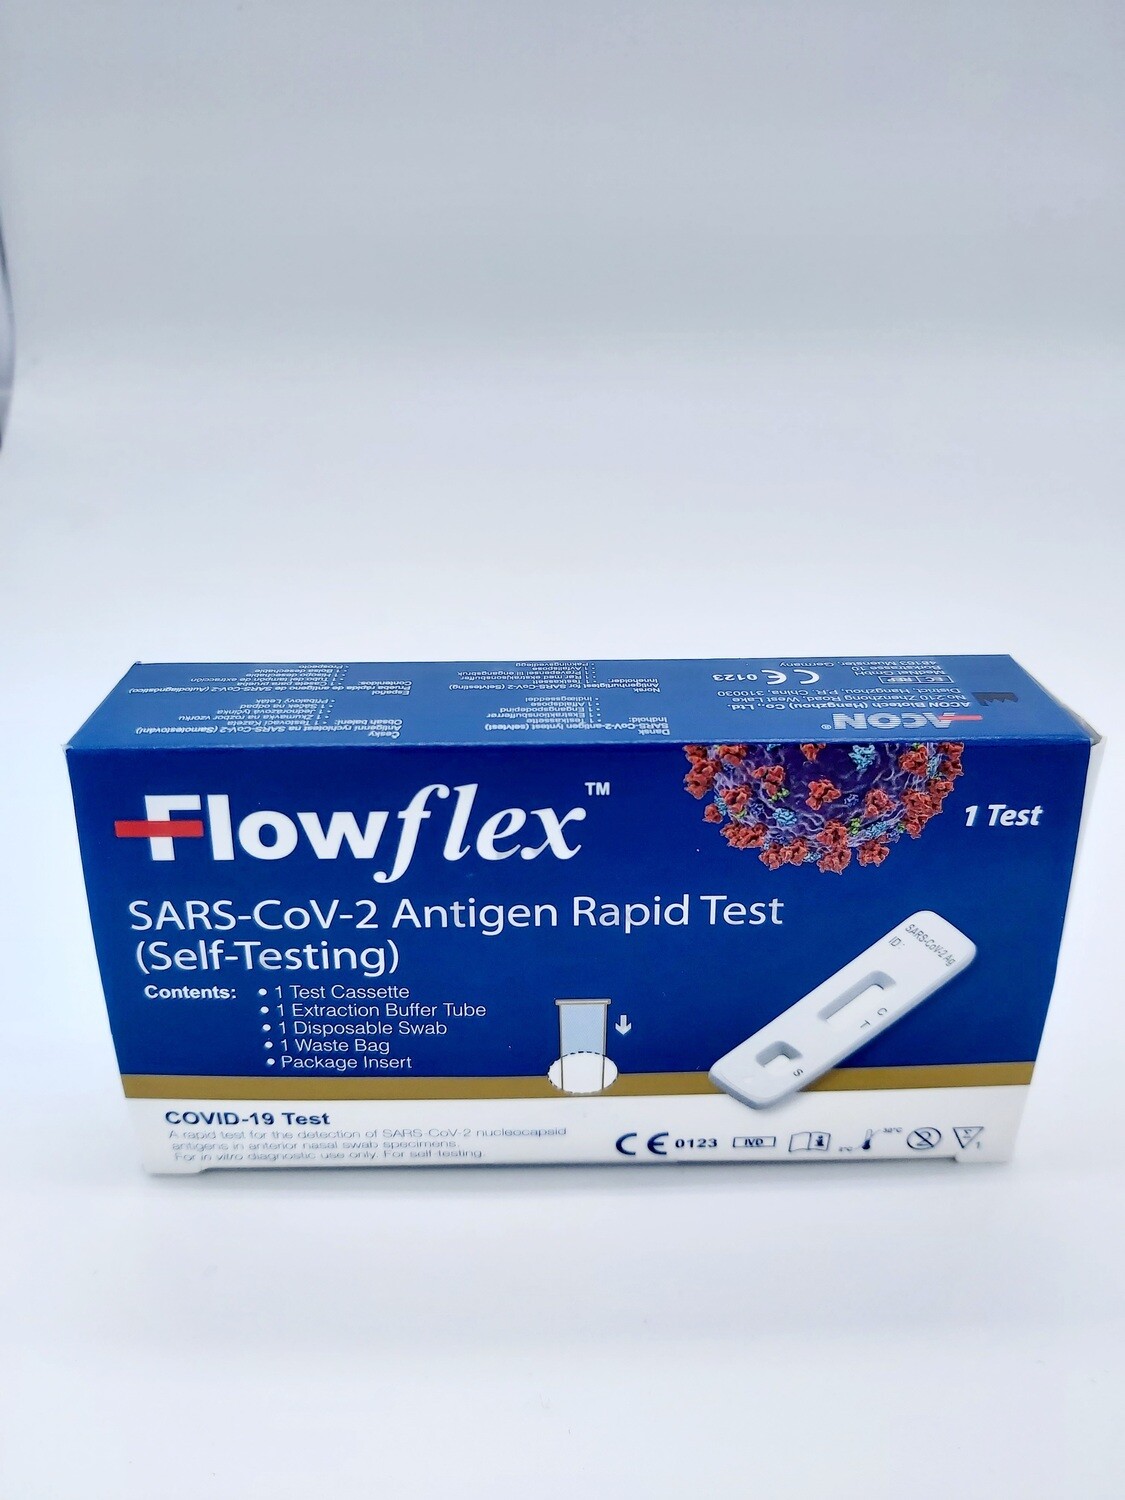 Flowflex Tampone Nasale Rapido Antigenico per Covid-19 Test Autodiagnostico